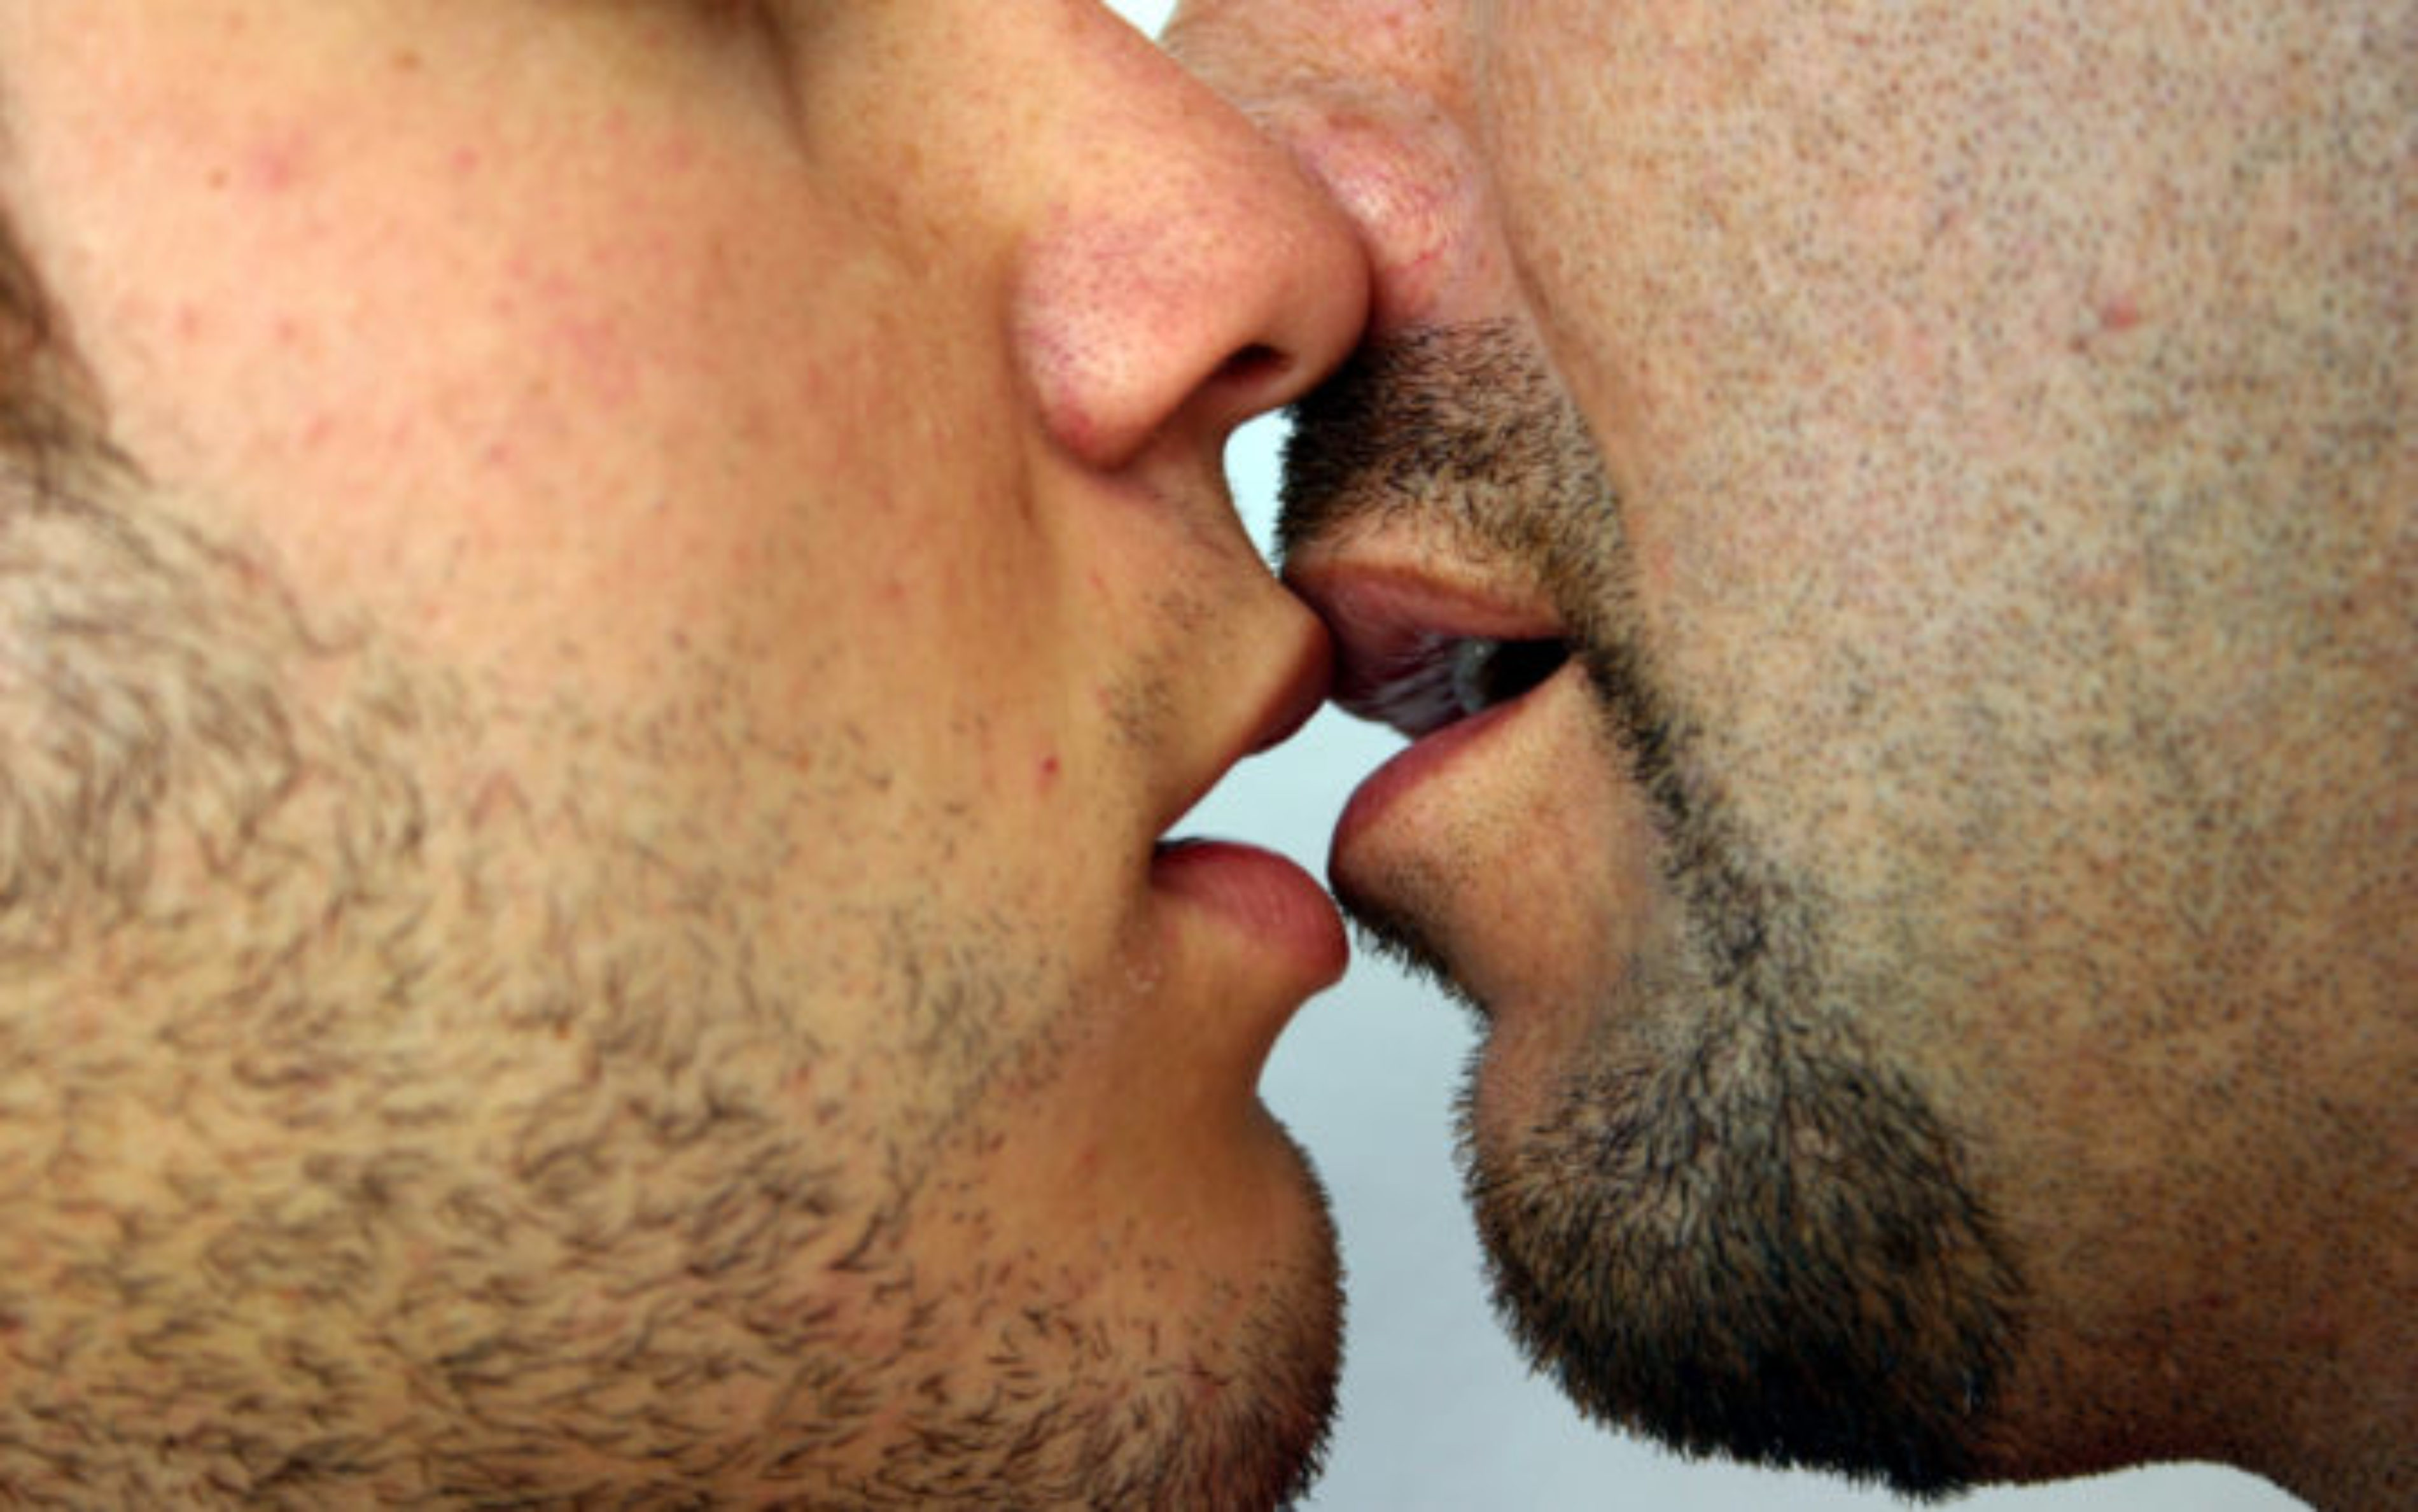 Men kissing a woman body porn photos